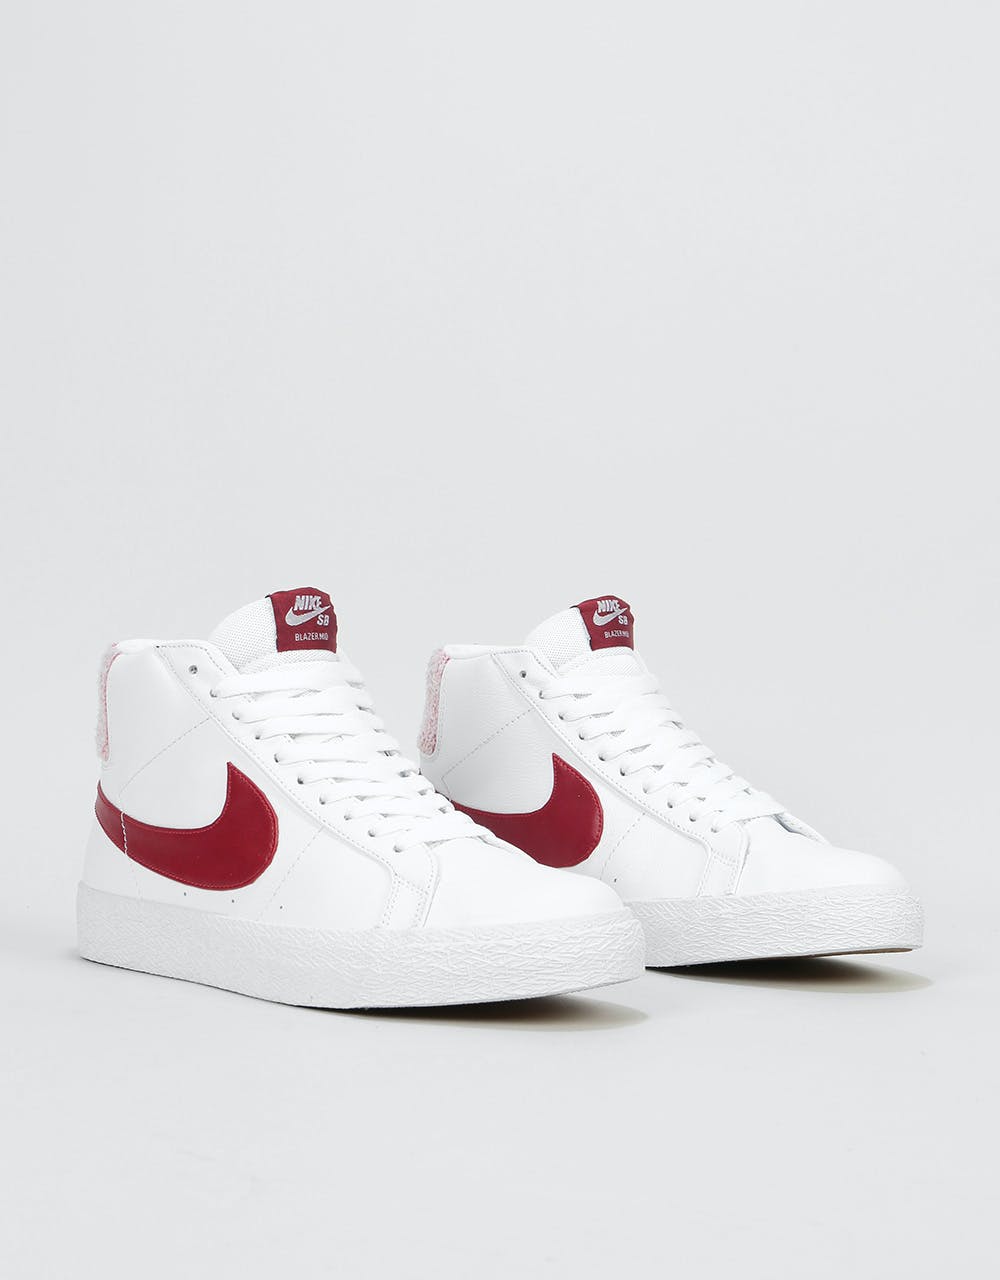 Nike SB Zoom Blazer Mid Premium Skate Shoes - White/Team Red